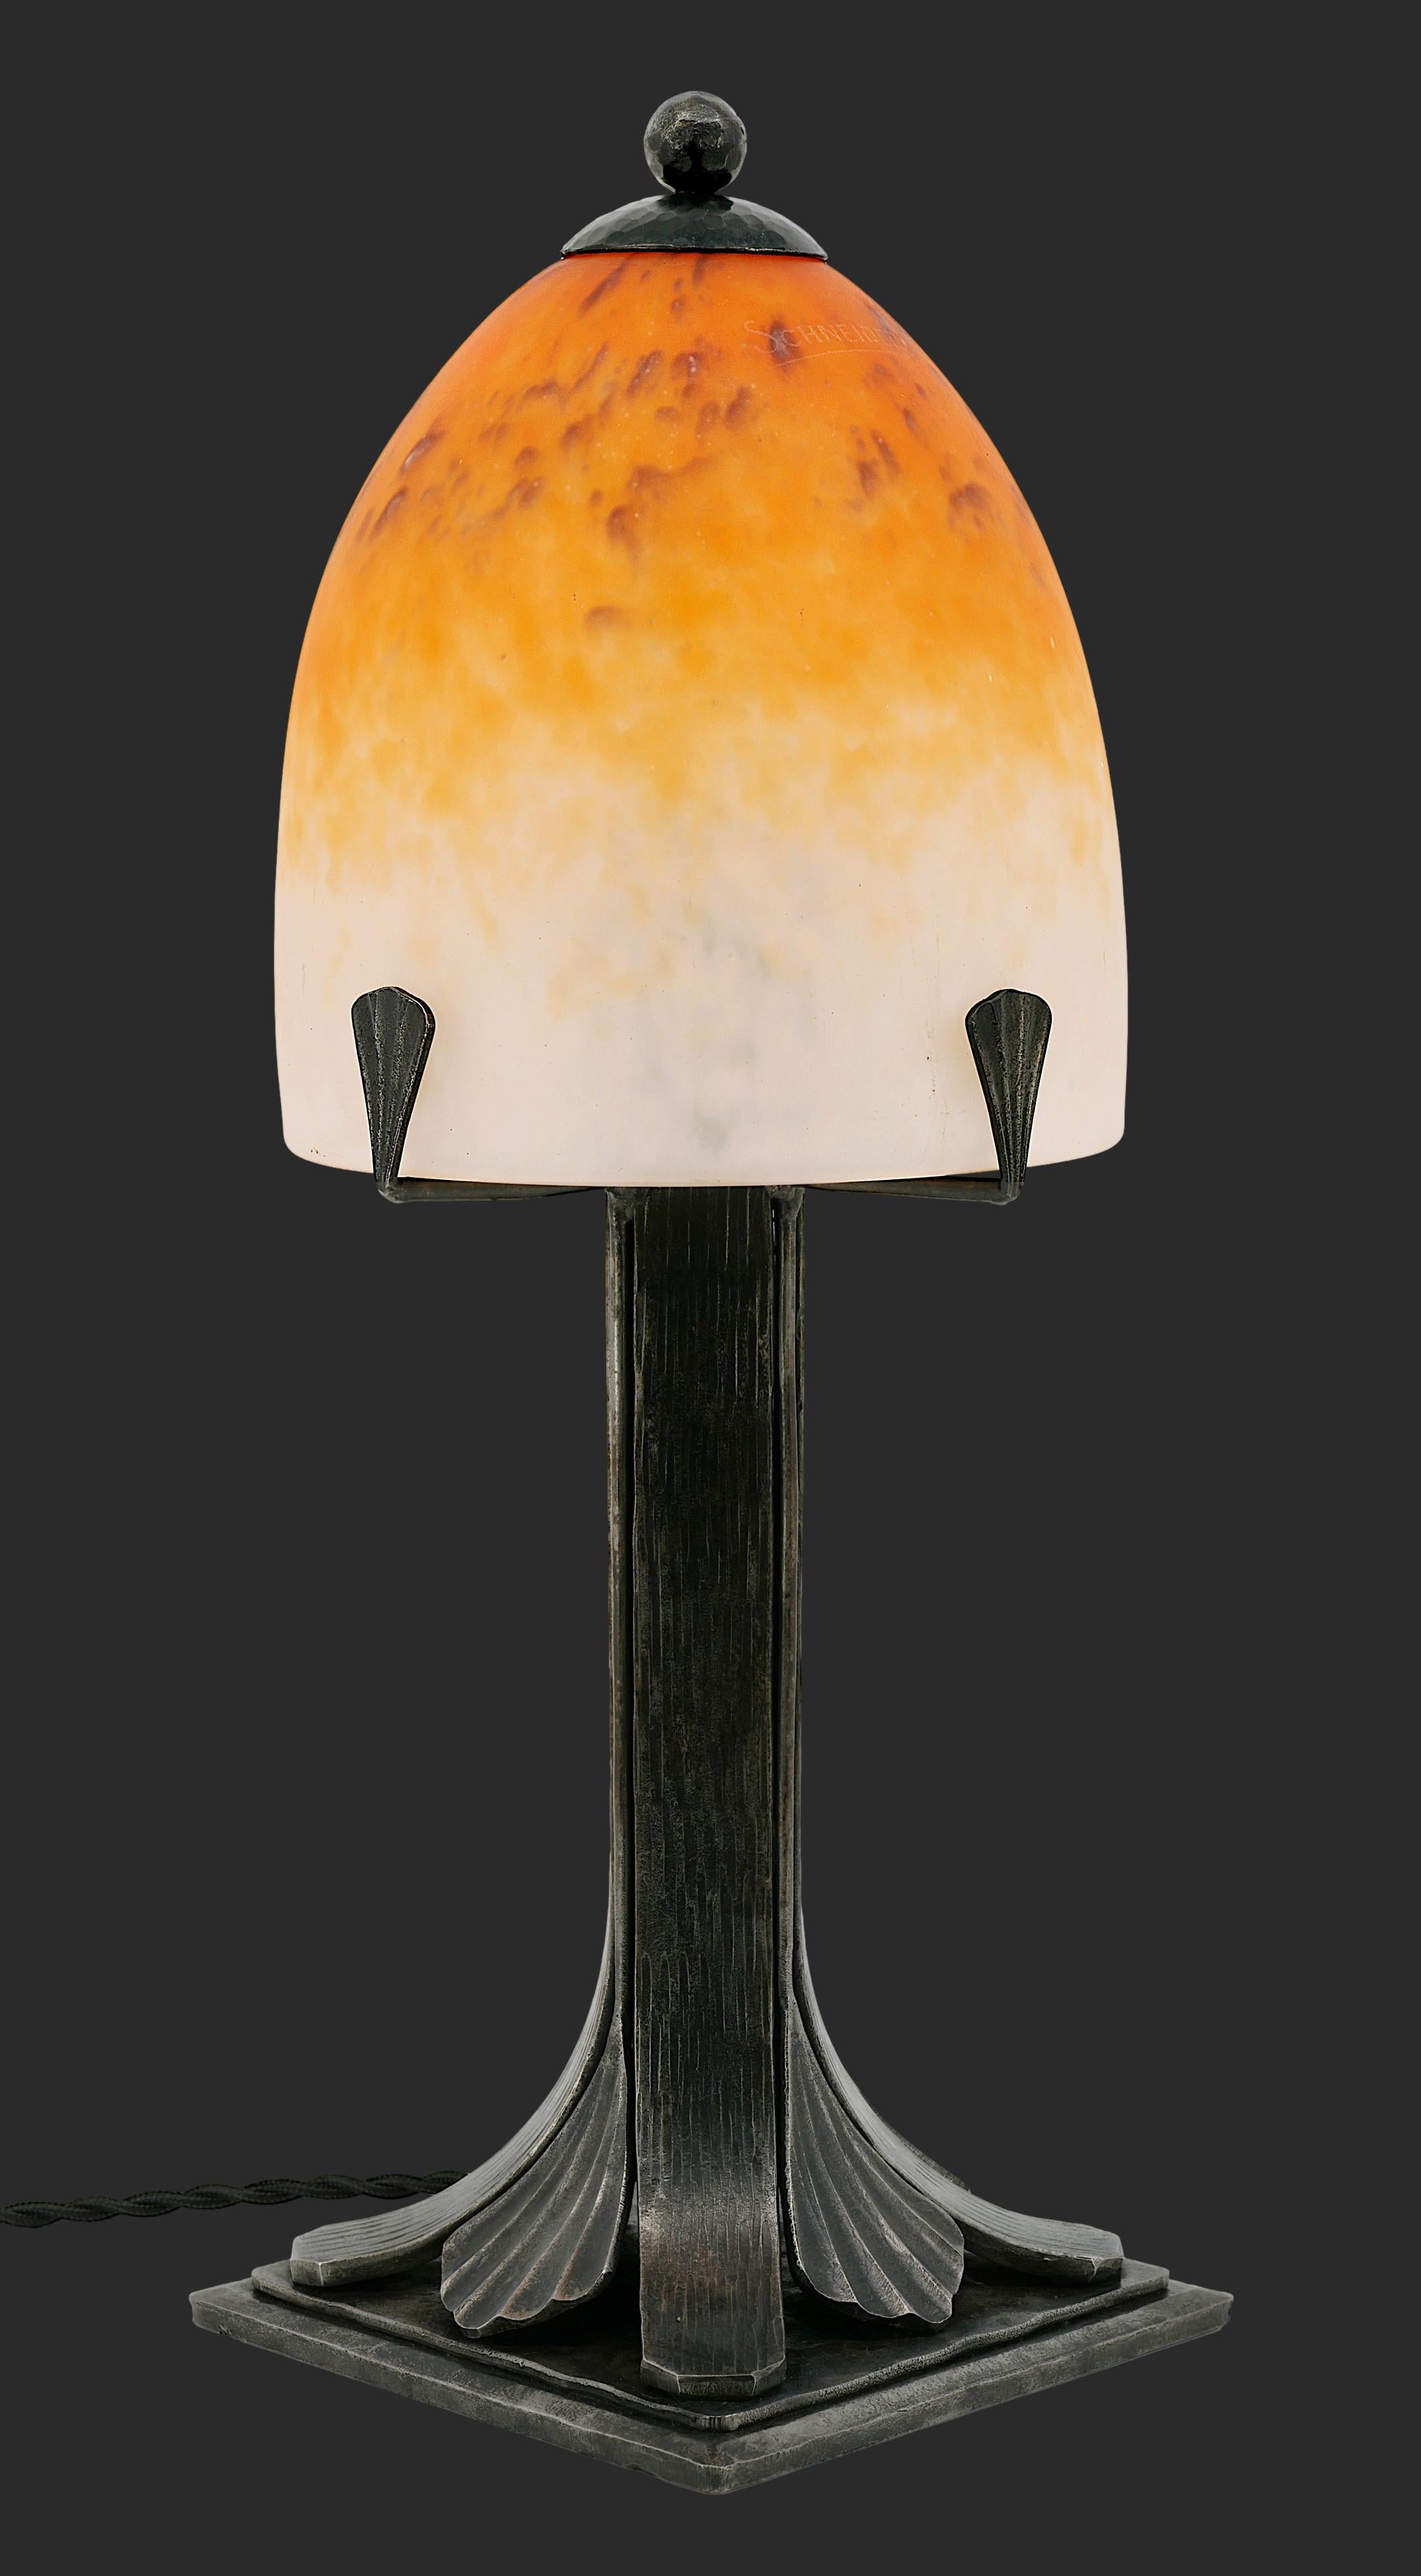 Lampe de table Art déco française par Charles Schneider (Epinay-sur-Seine, Paris), France, vers 1924-1928. Cet abat-jour en verre moulé soufflé, fabriqué par Charles Schneider, est monté sur une magnifique base en fer forgé. L'abat-jour en verre a